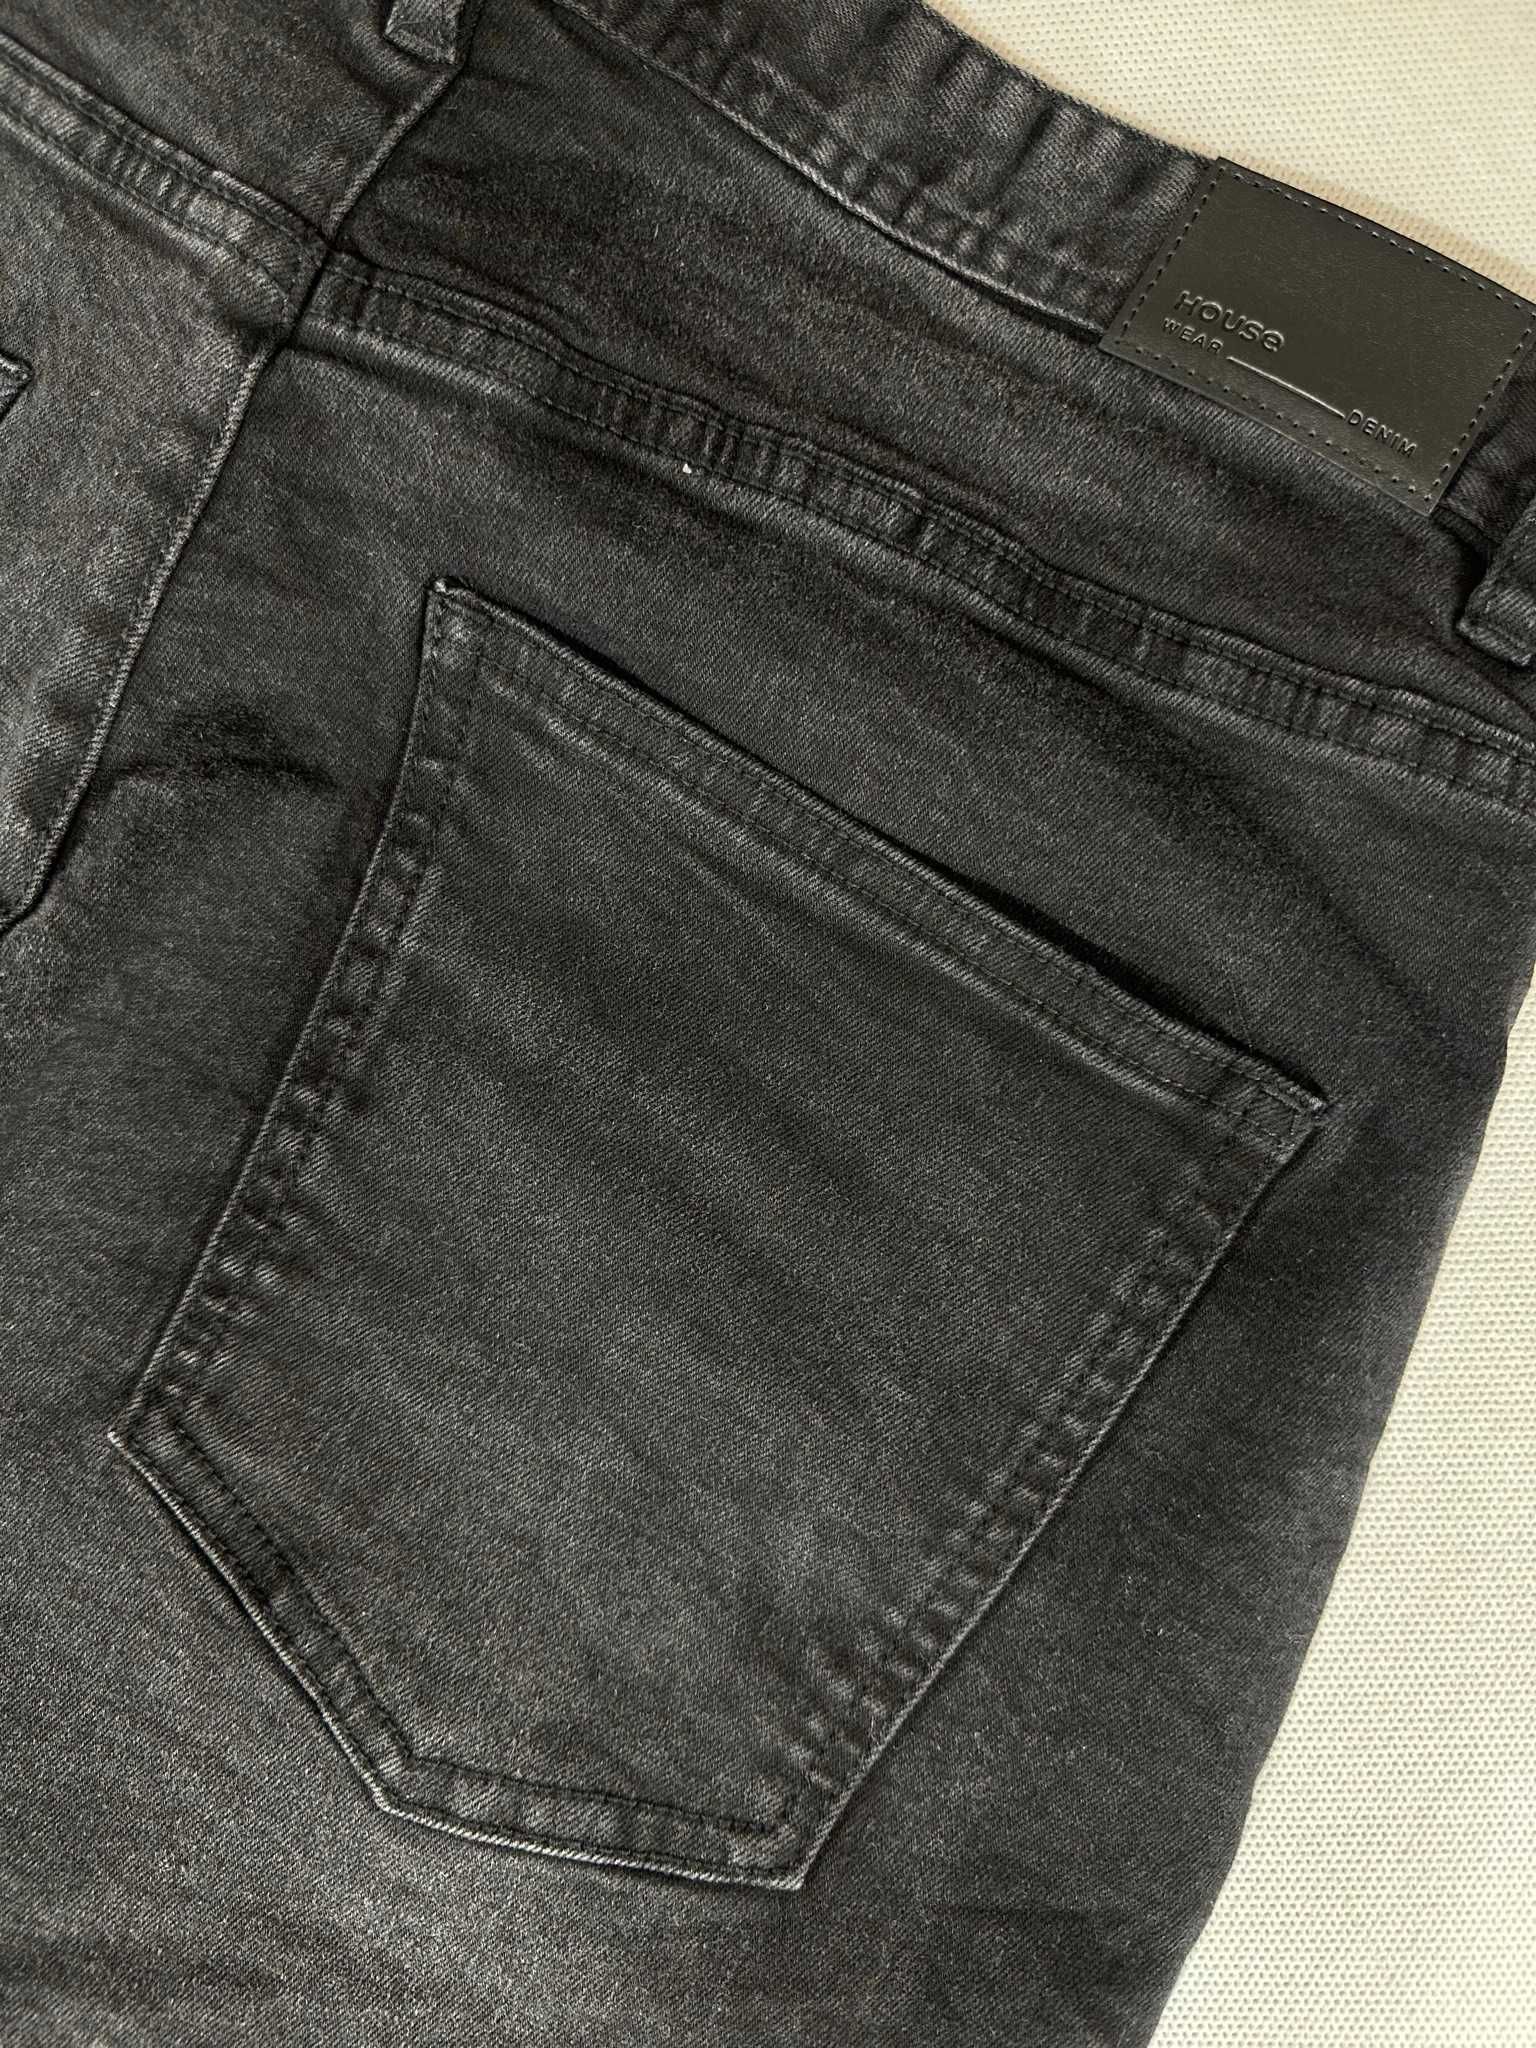 HOUSE jeans czarne bojówki cargo slim fit W32L32 86cm